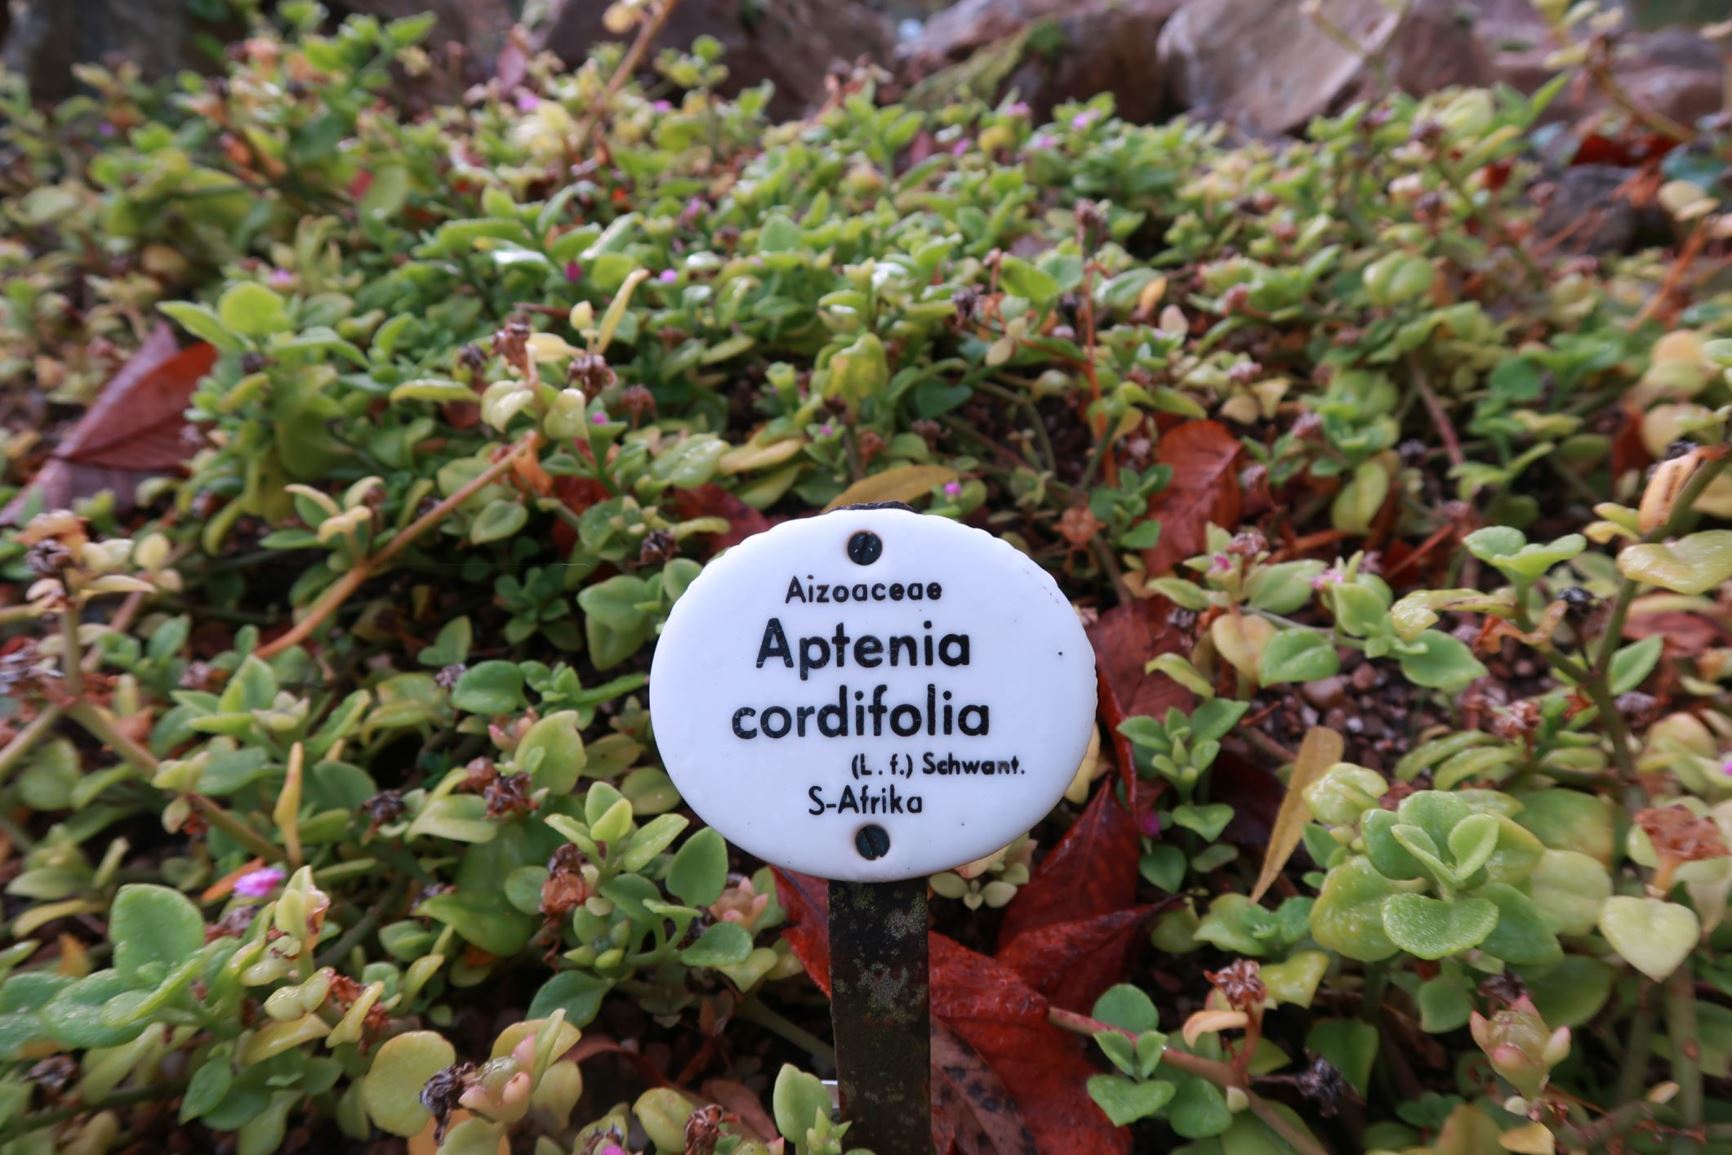 Mesembryanthemum cordifolium - Ausdauerndes Eiskraut, Herzblatt, Baby sun-rose, Heartleaf iceplant